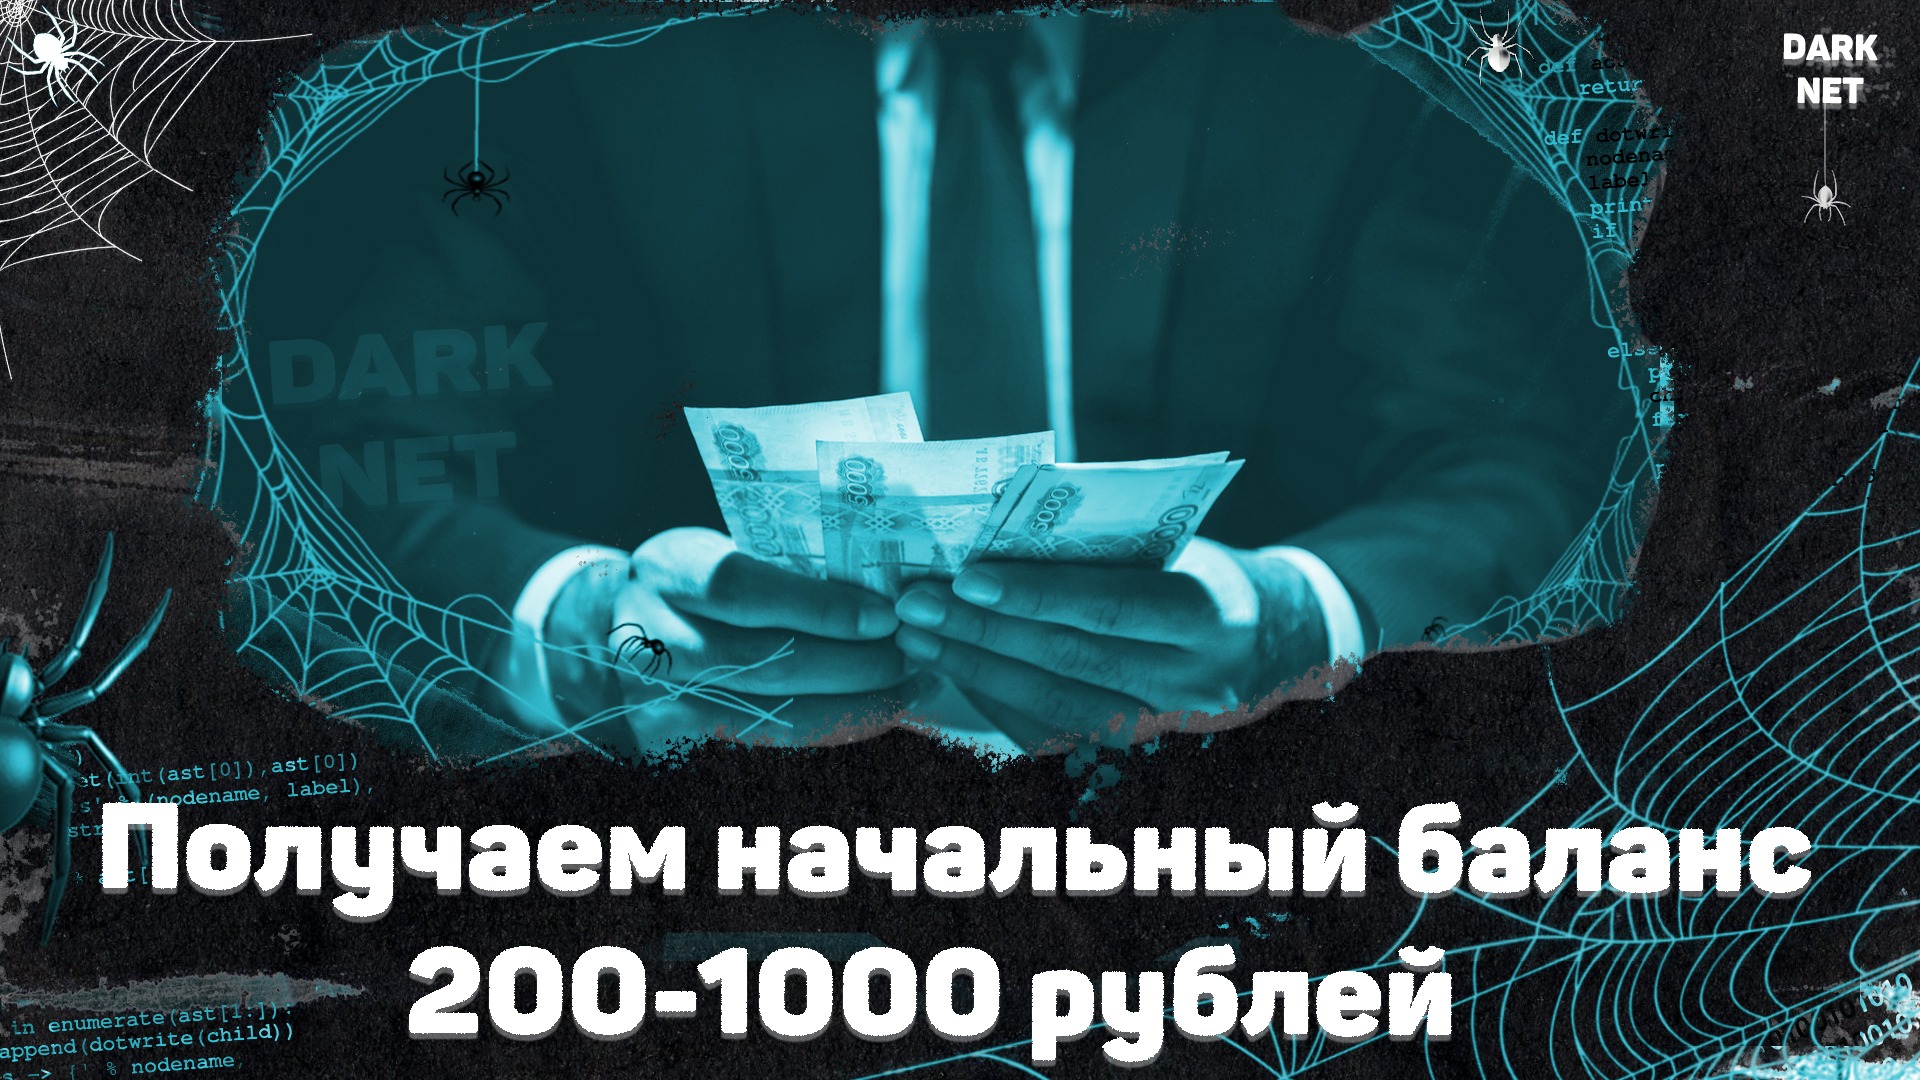 Баланс 200 рублях